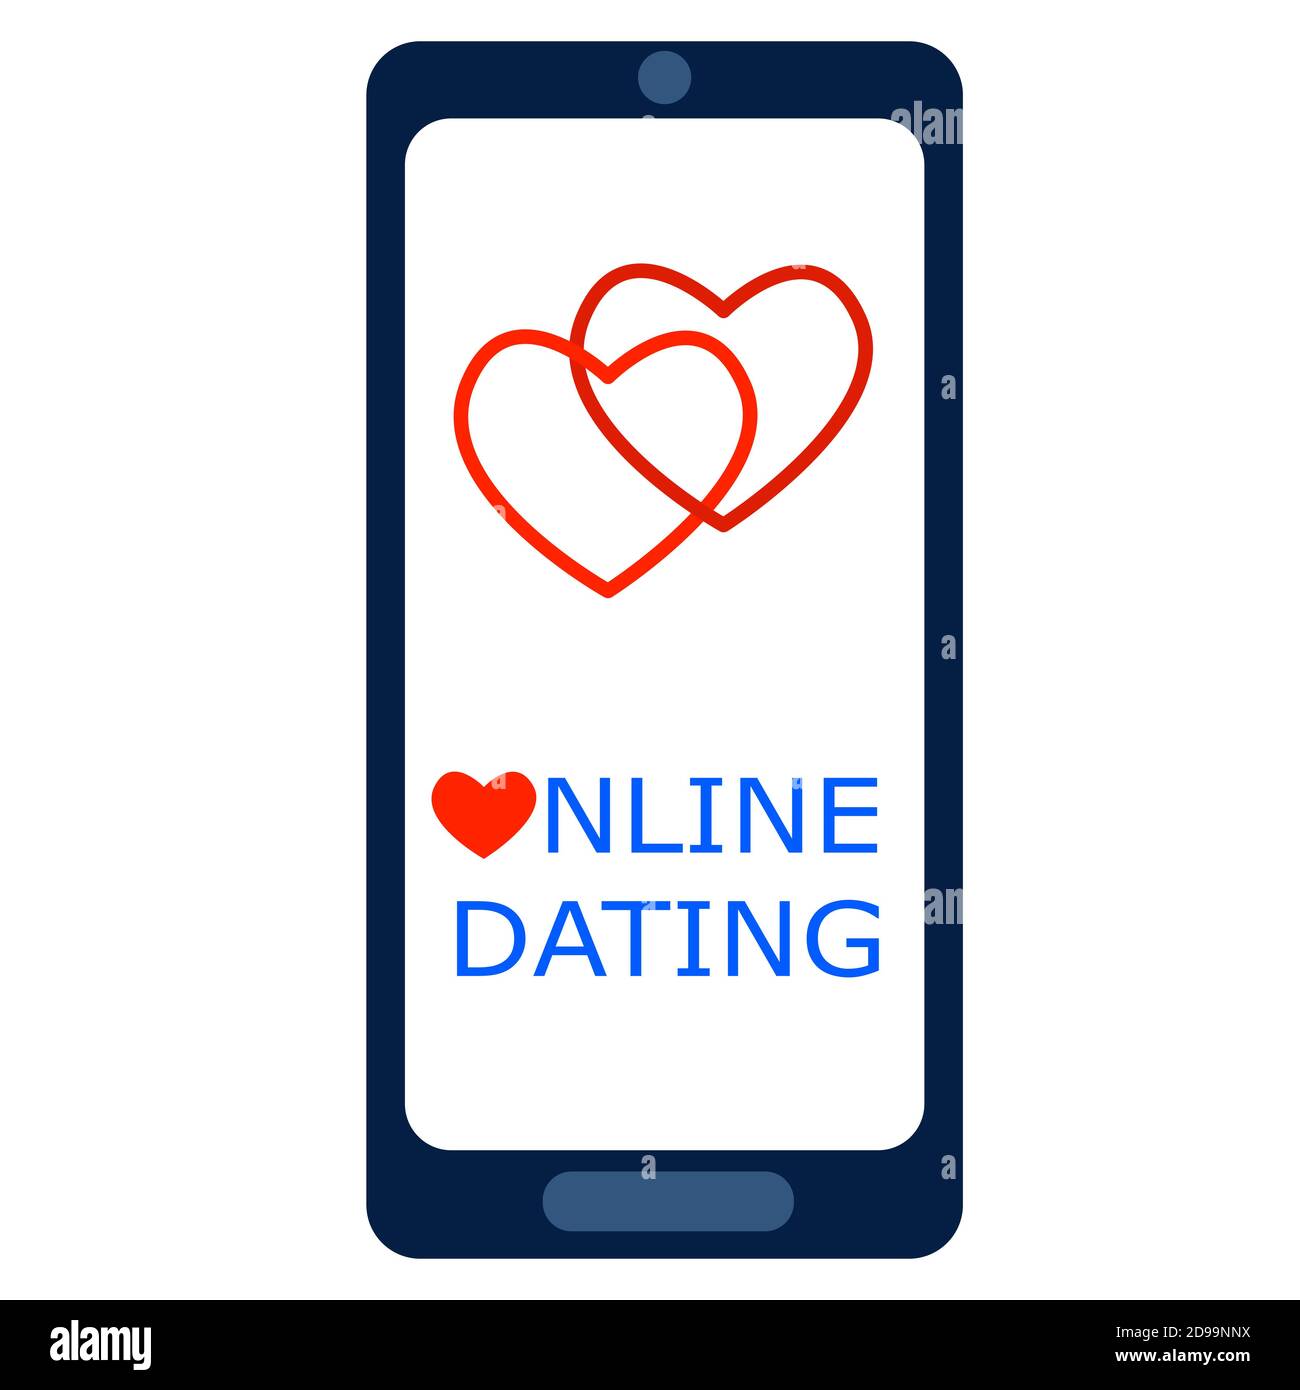 Online dating concetto. Smartphone con due cuori sullo schermo. Applicazione mobile per relazioni a lunga distanza. Illustrazione vettoriale. Illustrazione Vettoriale